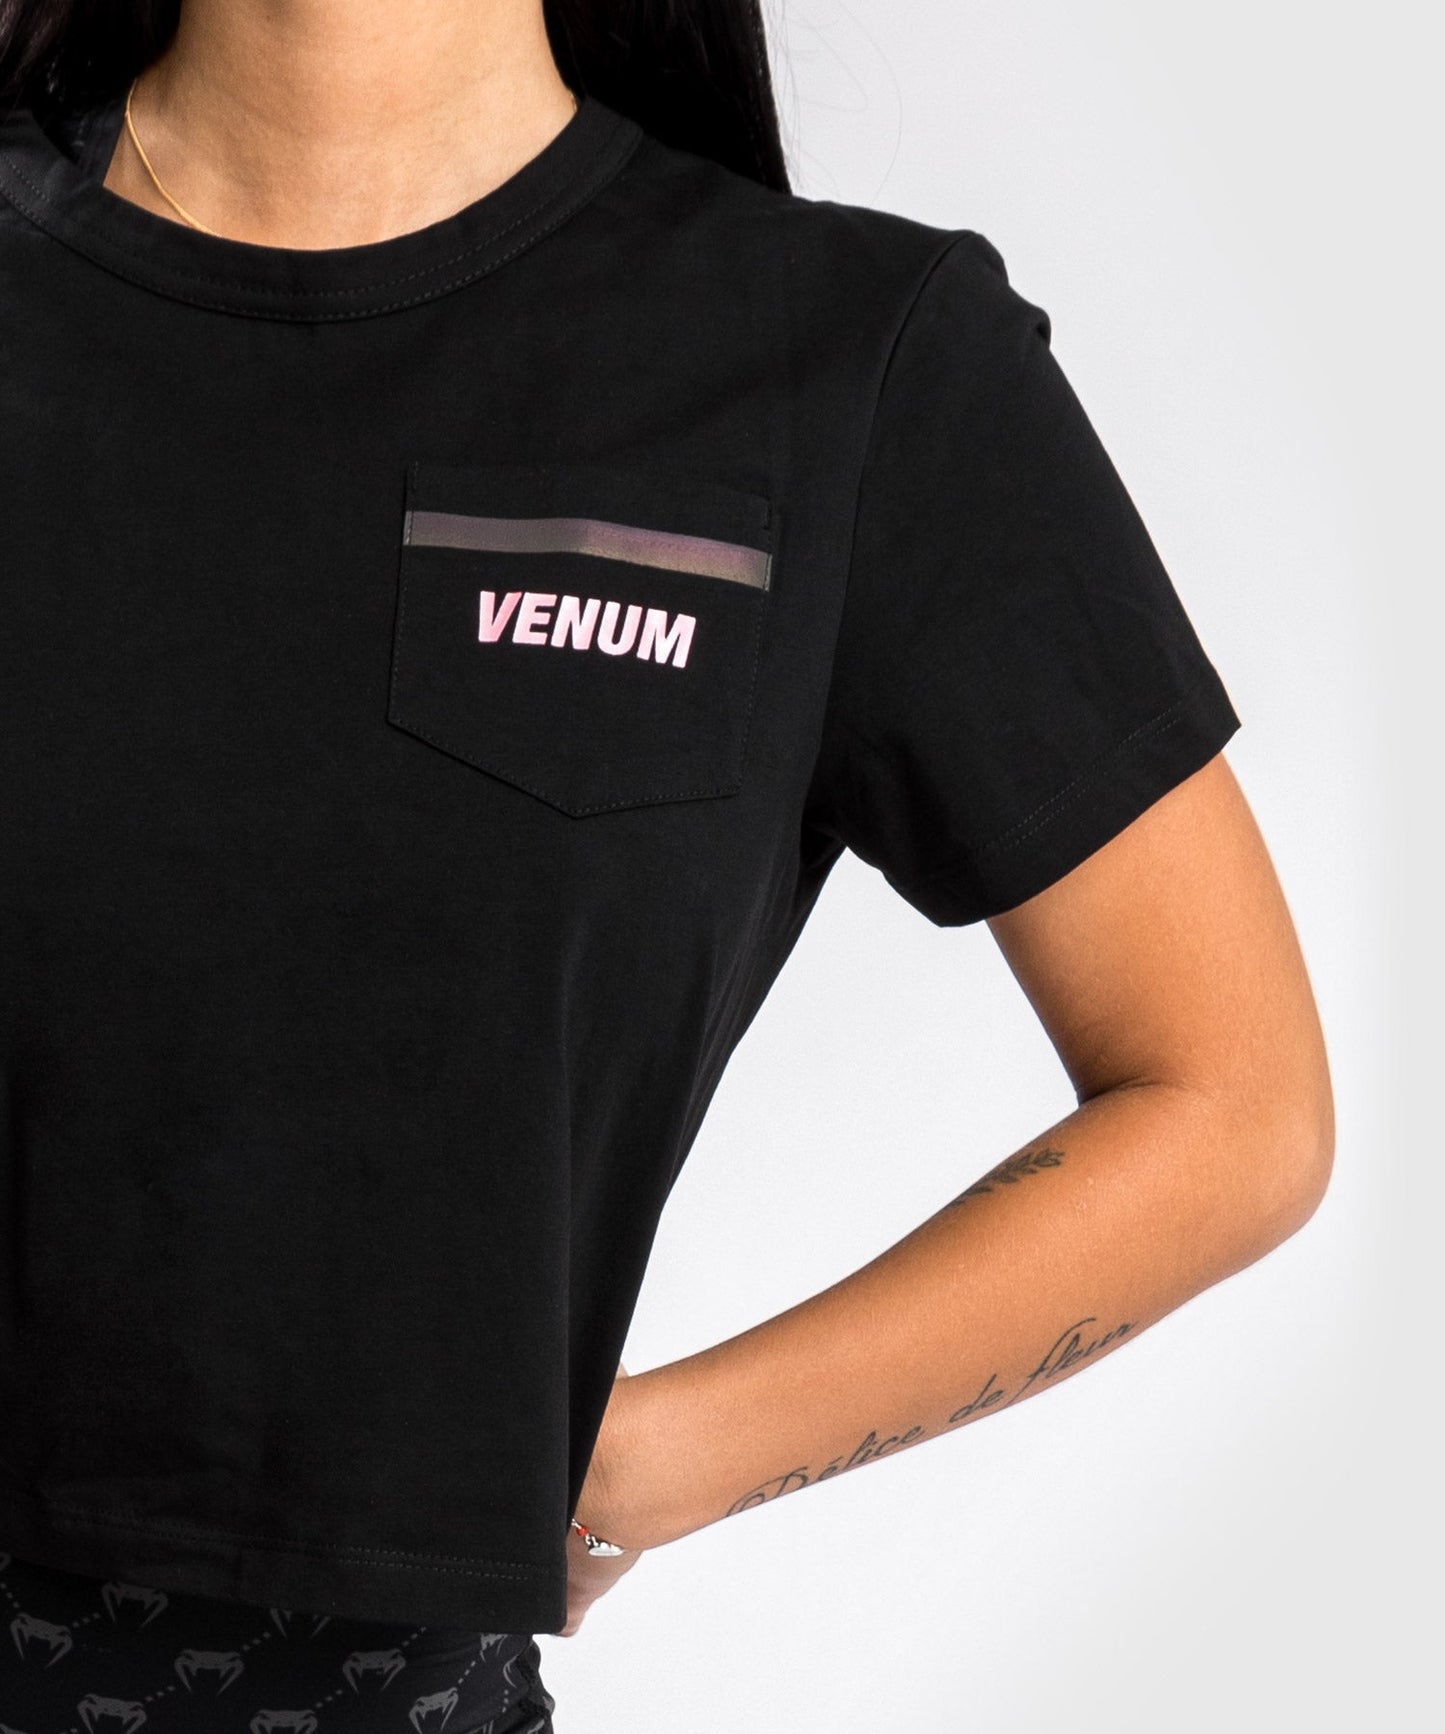 Venum Pink Pocket T-Shirt - For Women - Black/Pink Gold